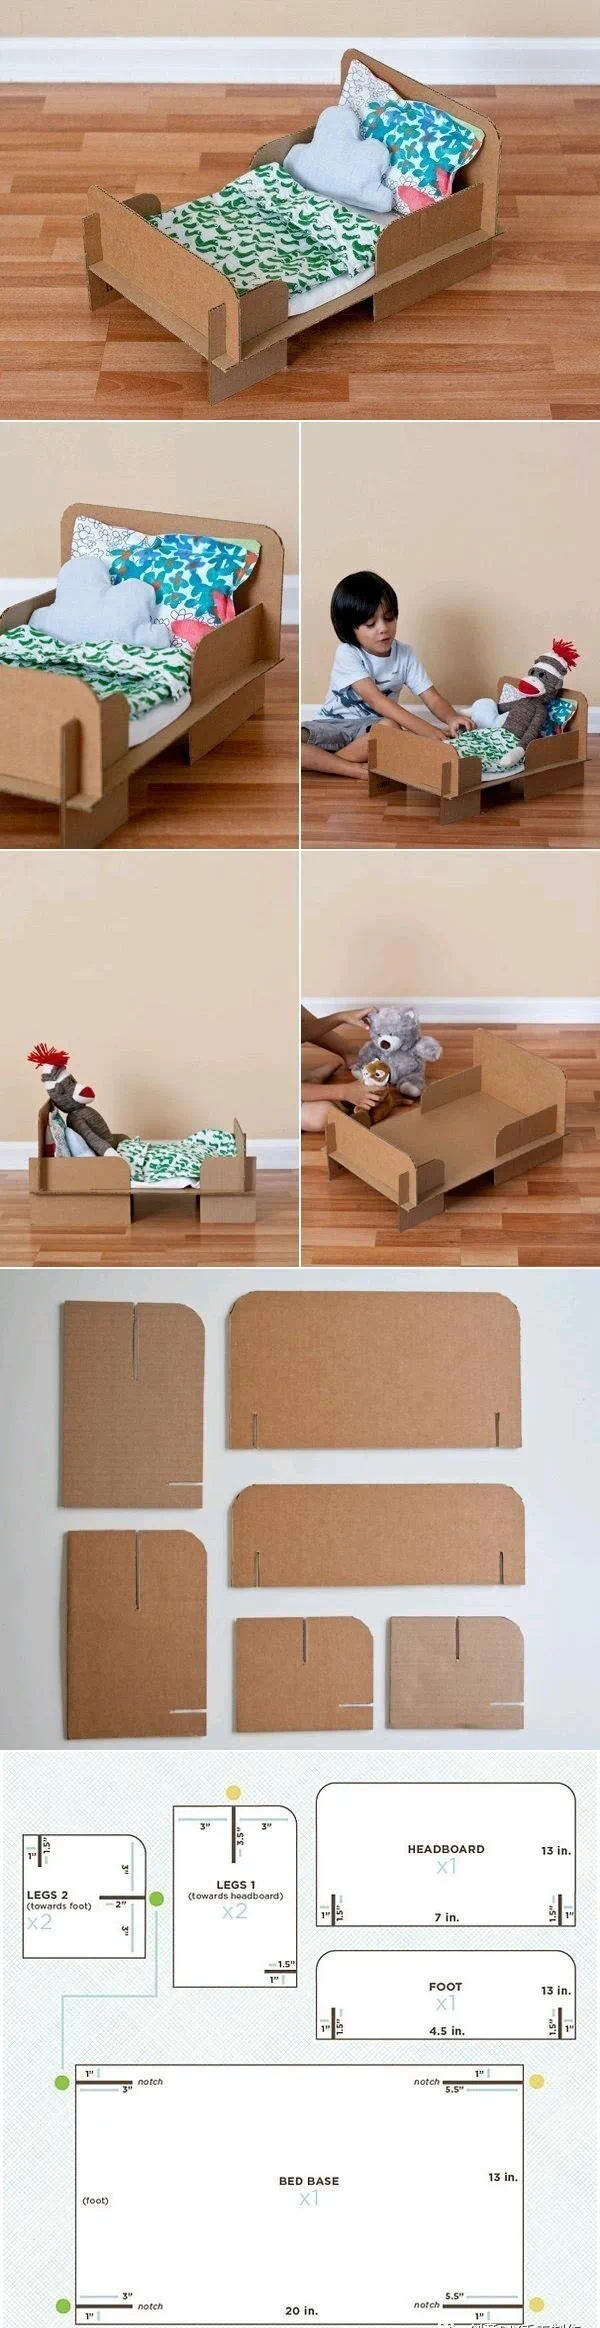 用纸箱做实用家居装饰好看又有创意